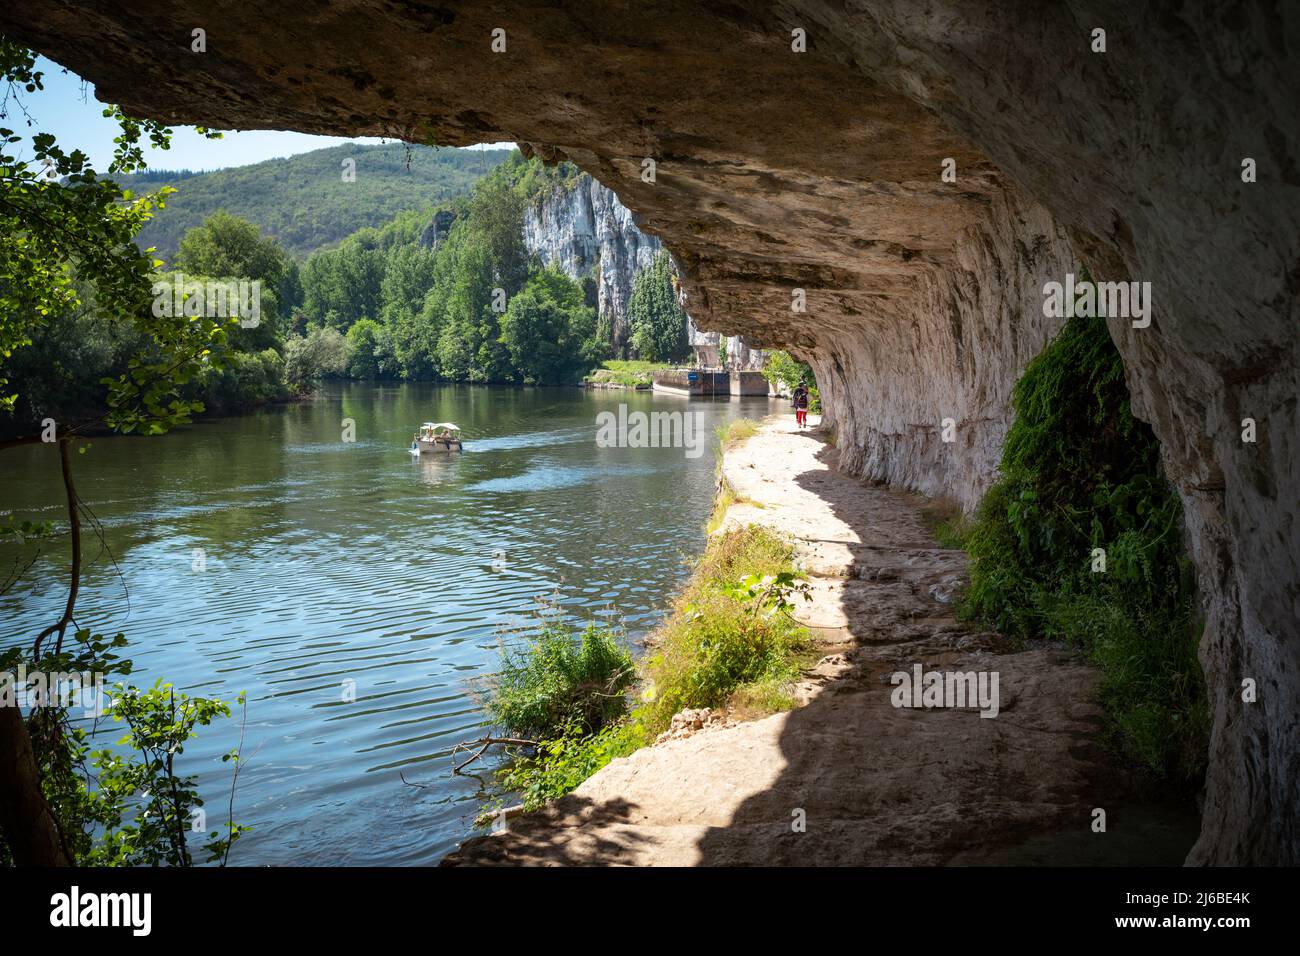 Chemin de Halage un chemin de halage de sentier de thowpath coupé dans la roche à côté de la rivière Lot dans le sud-ouest de la France Banque D'Images